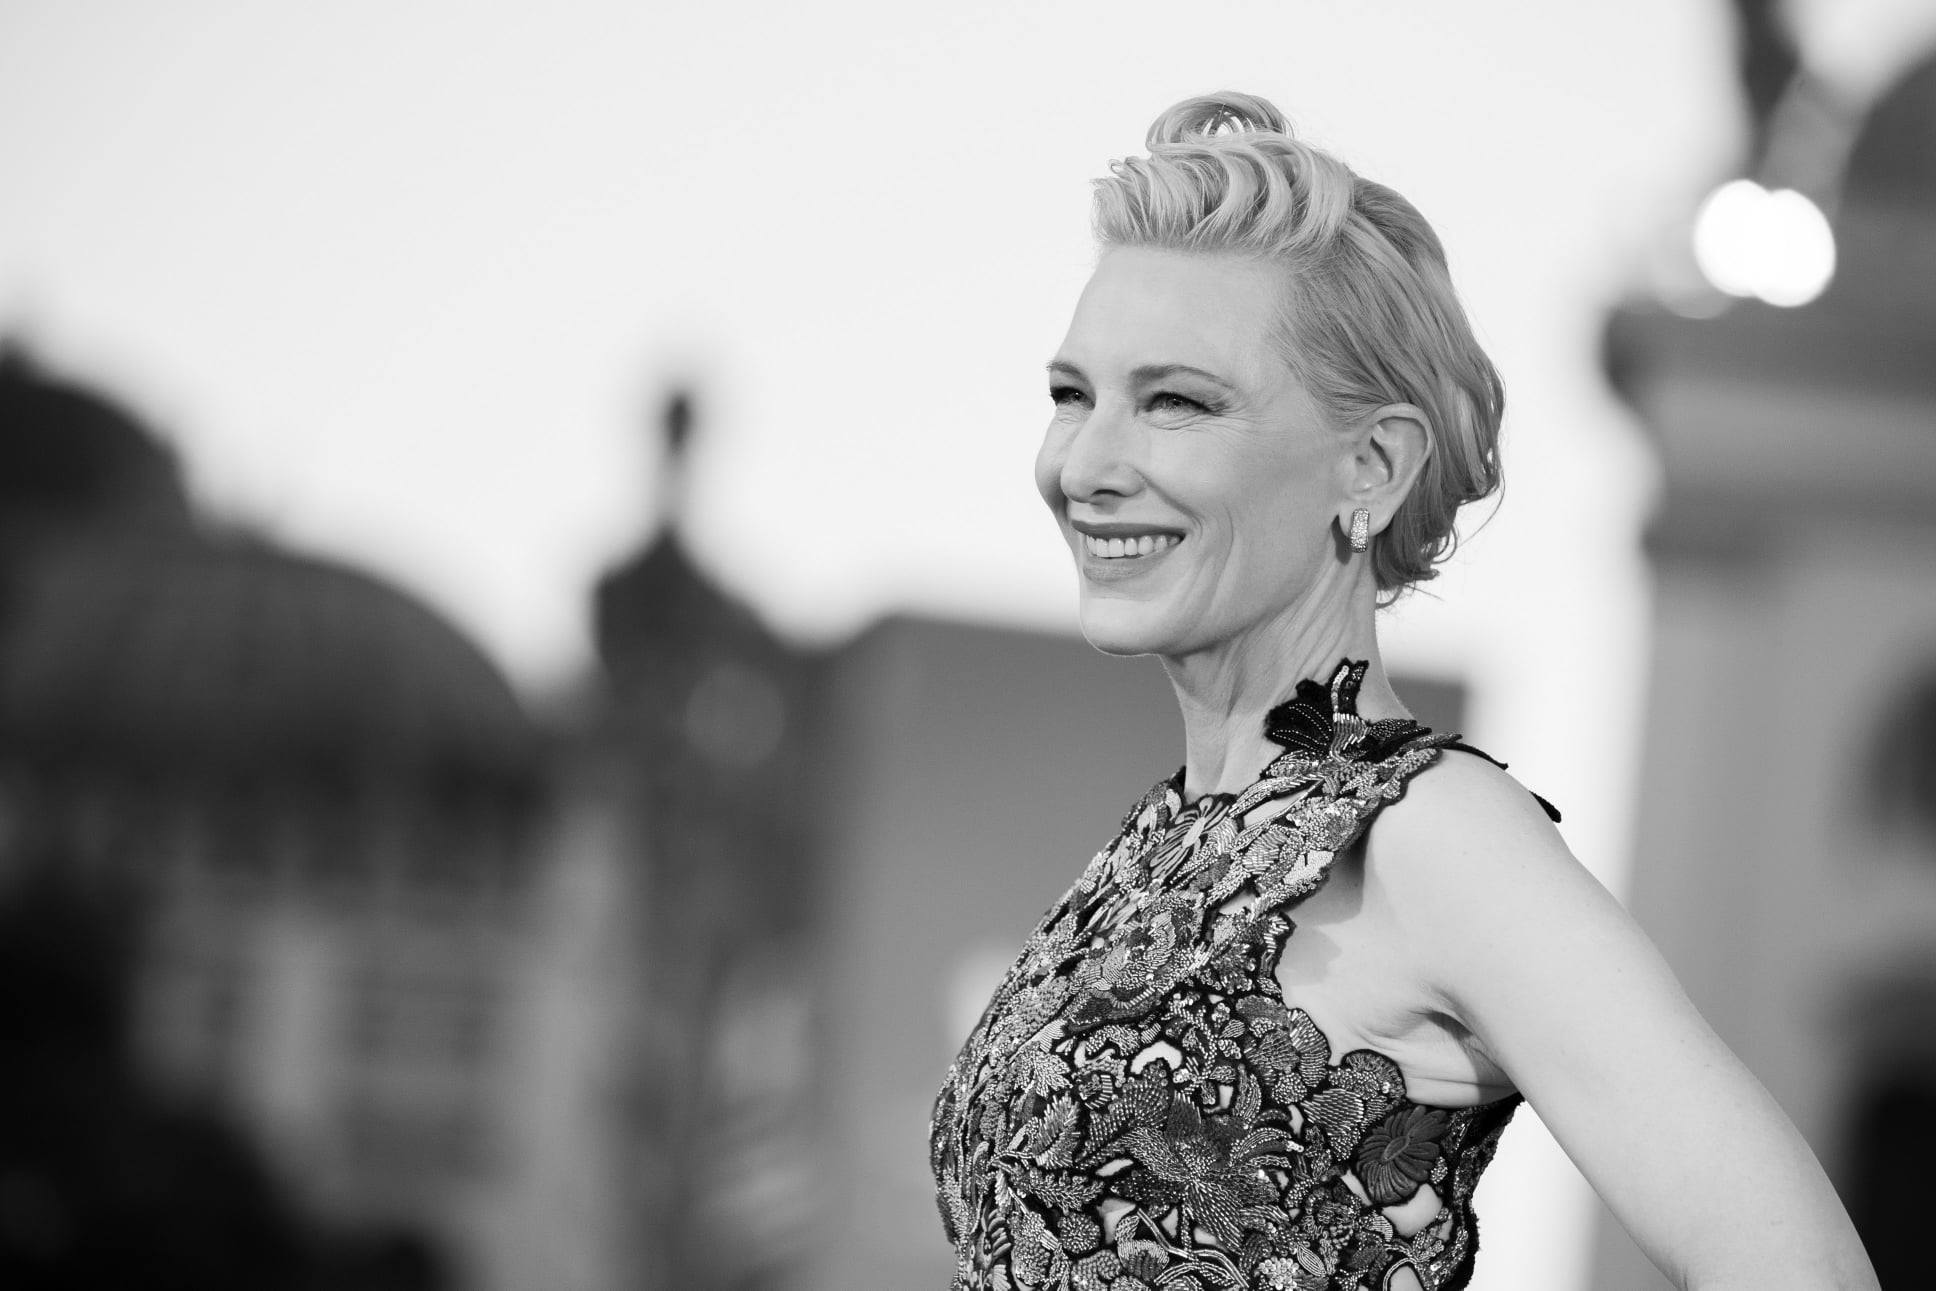 Kate Blanchett